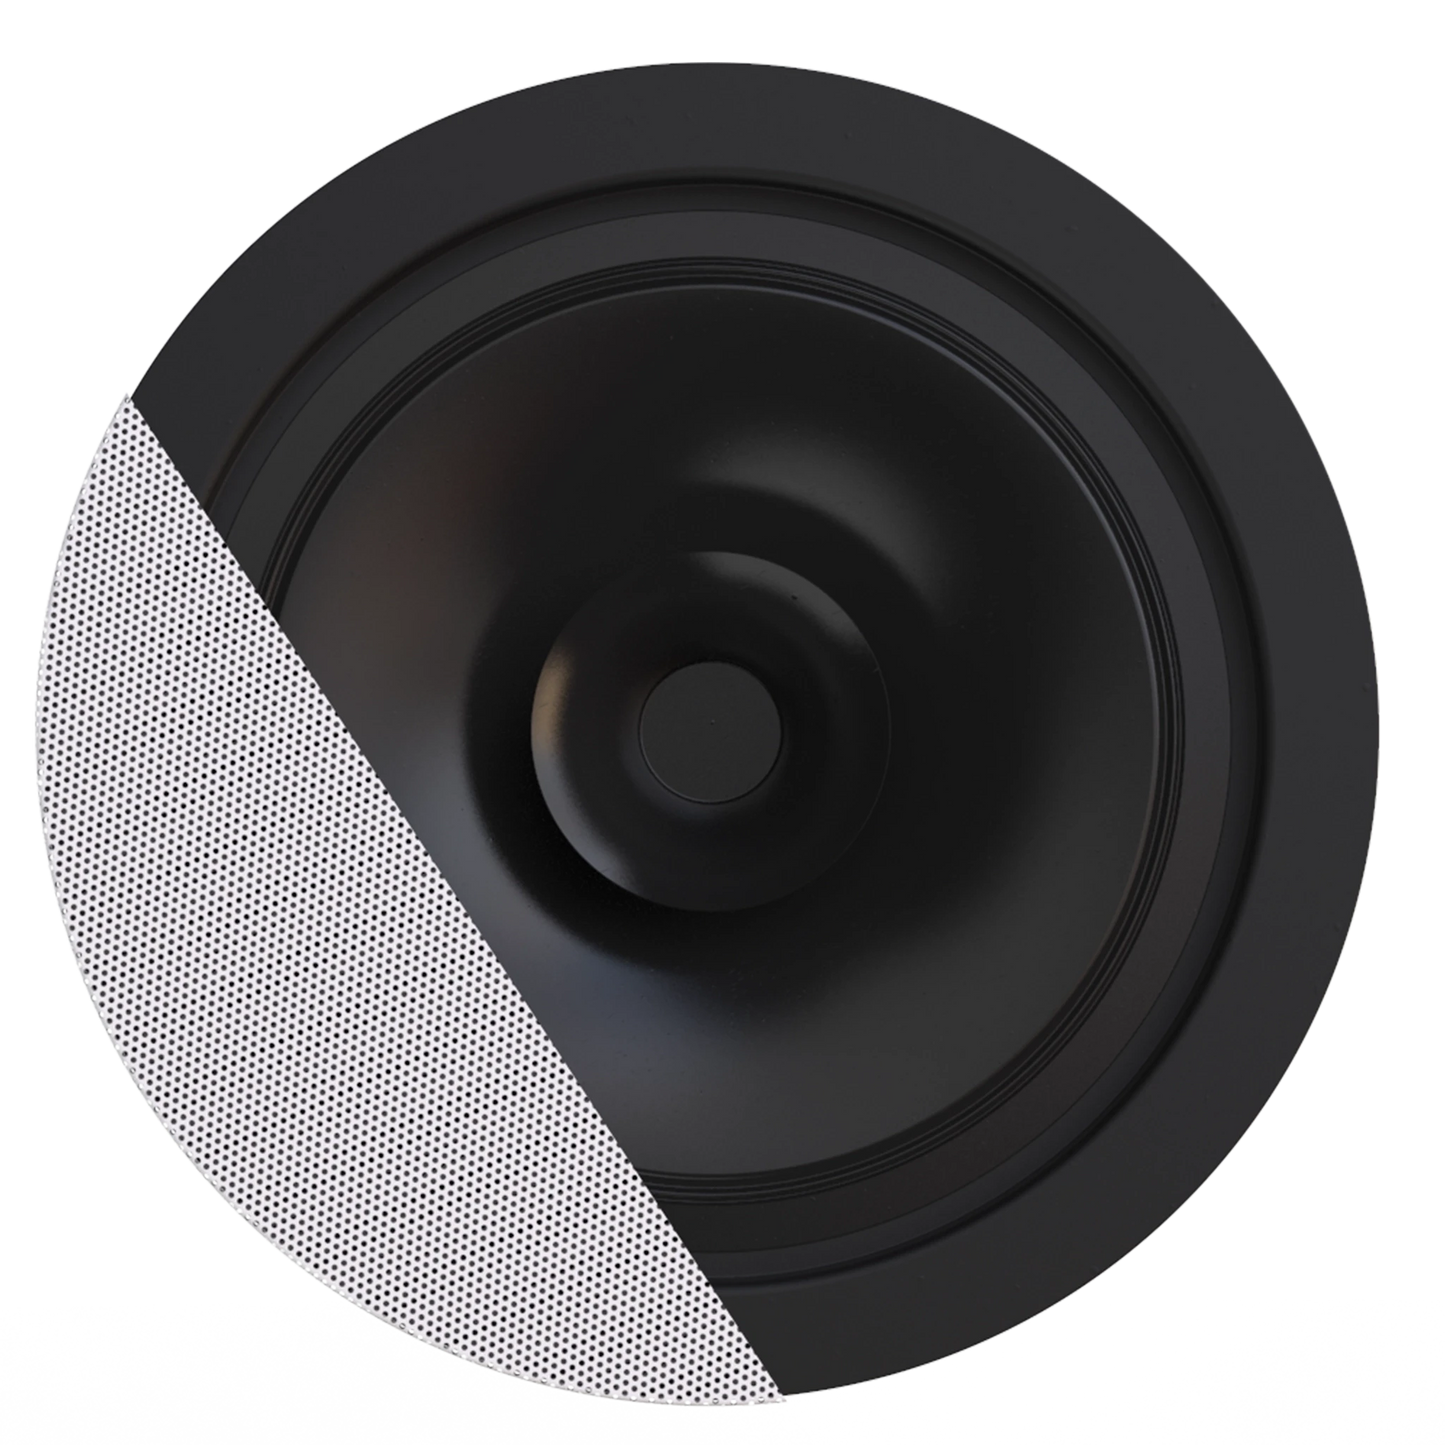 CENA706 6.5" ceiling speaker, SpringFit™